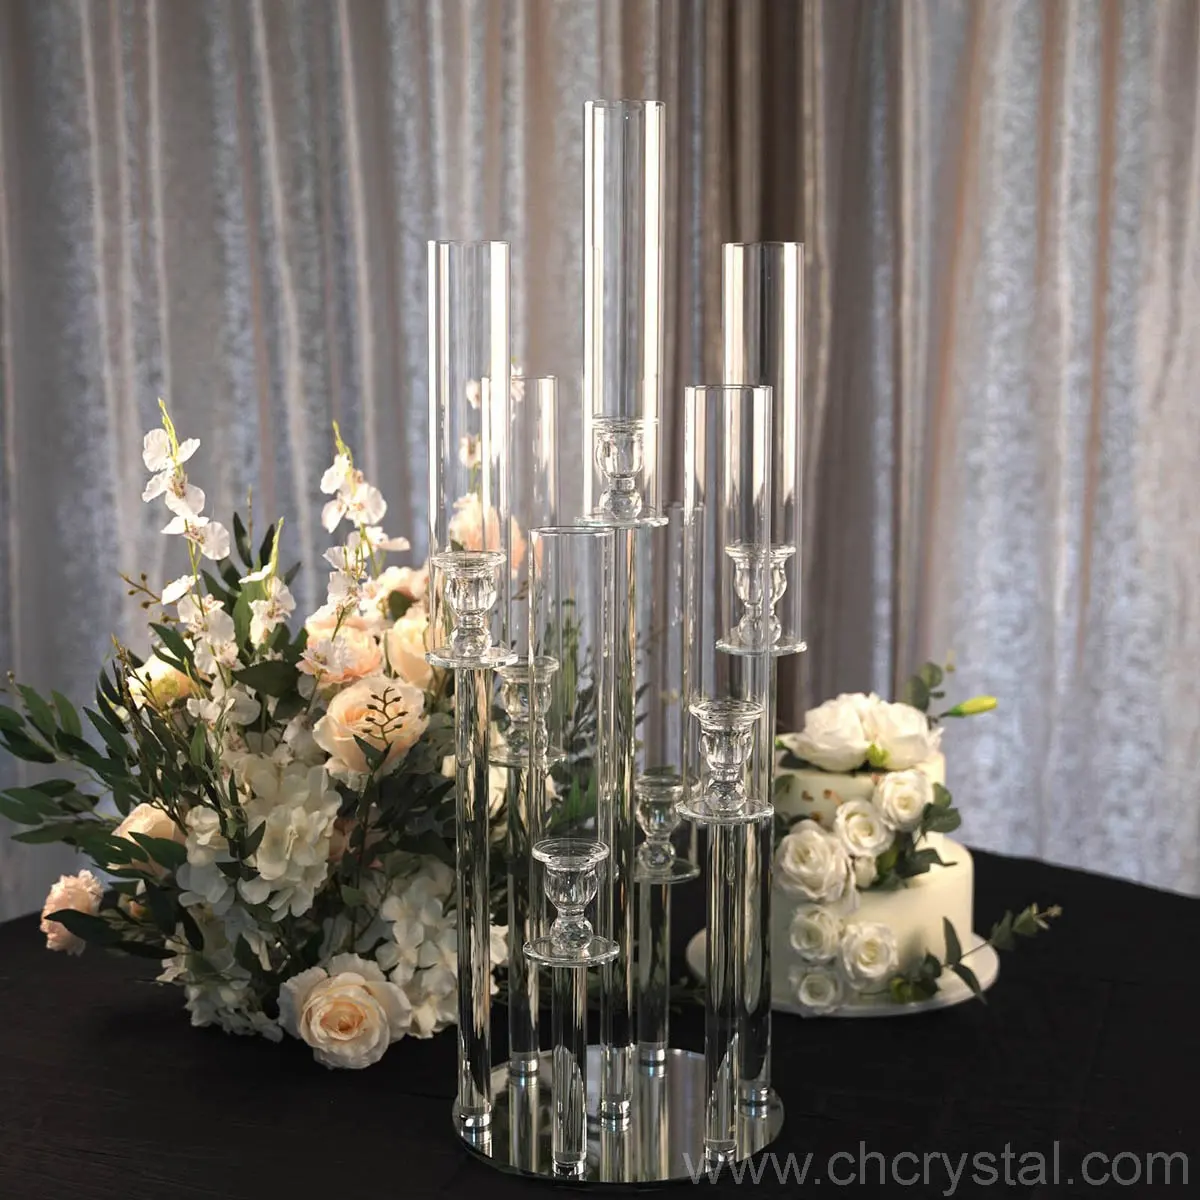 Candelabros com 7 braços de decoração de mesa, candelabros de cristal k9 de altura com base circular, tubos de vidro